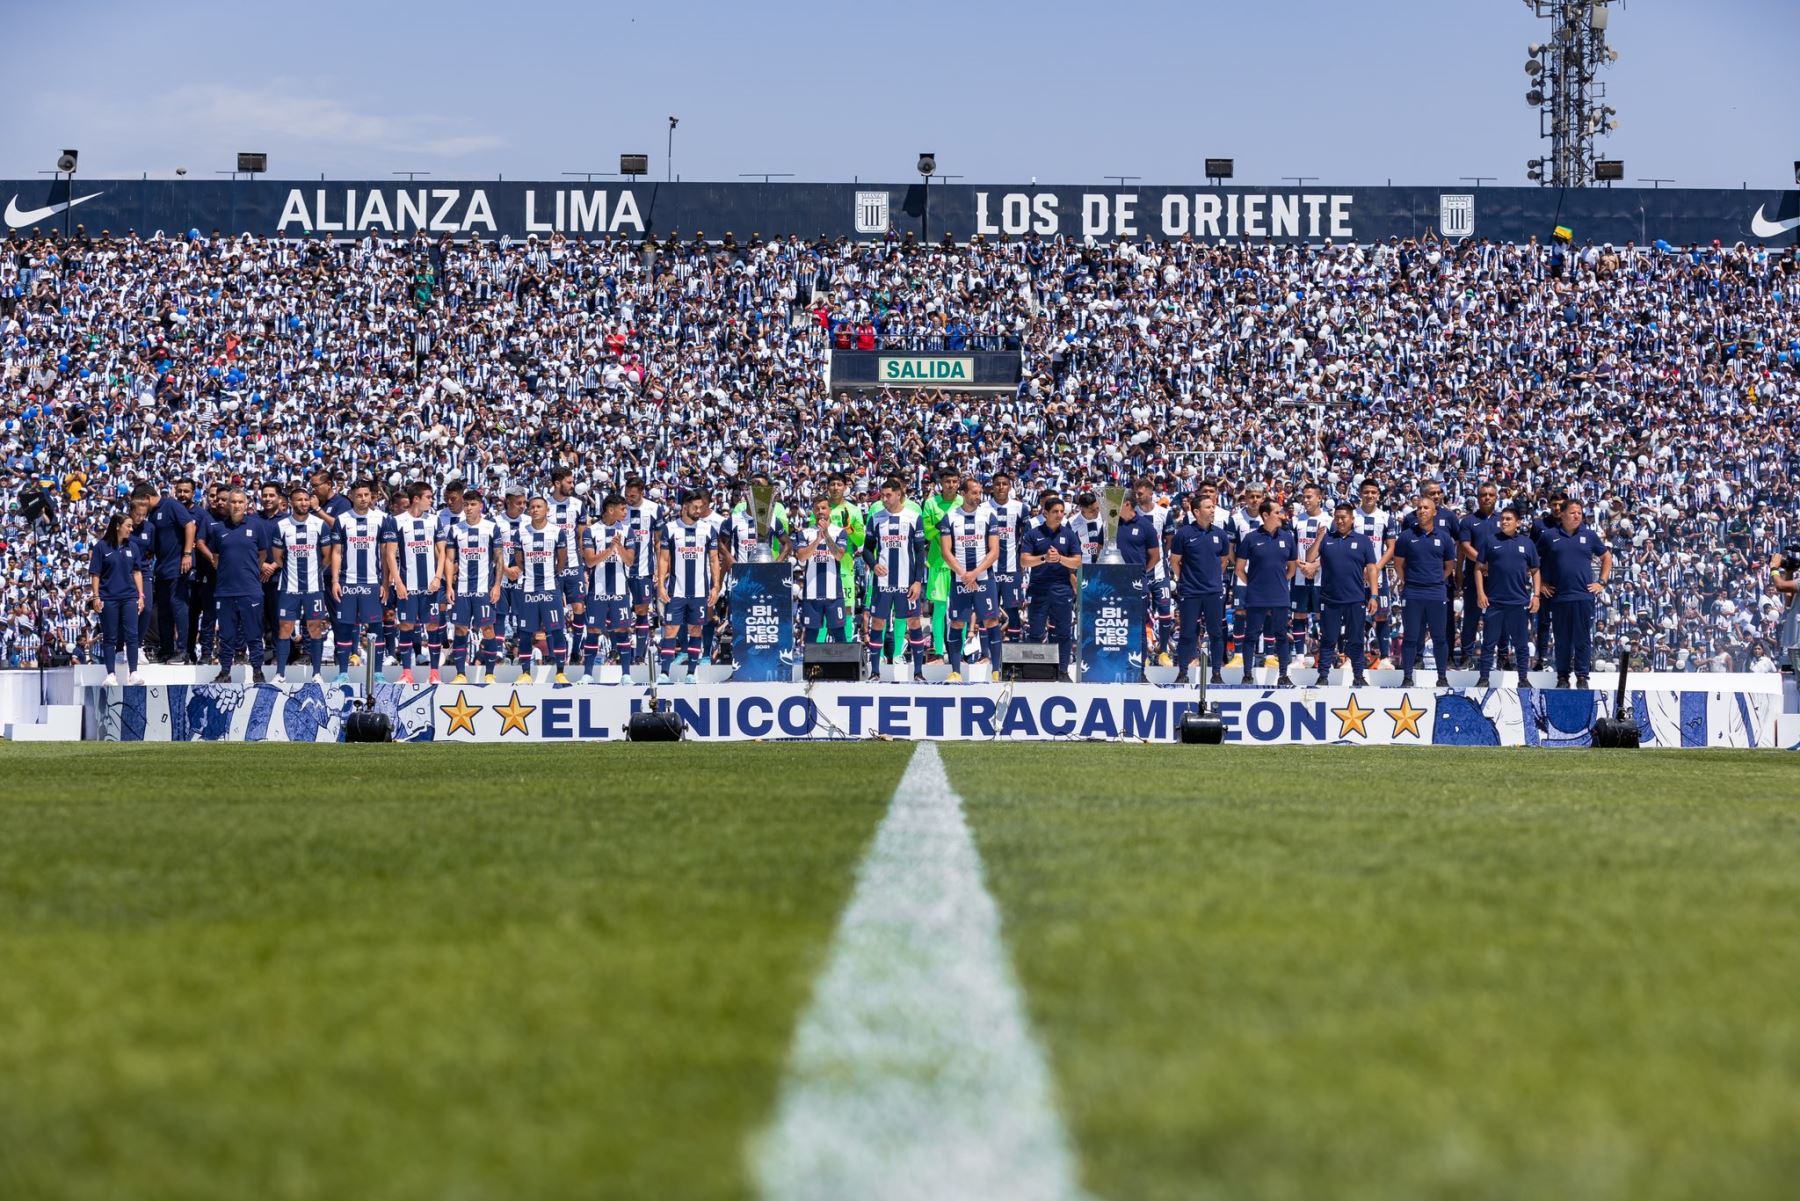 El plantel de jugadores de Alianza Lima se presentó ante su hinchada